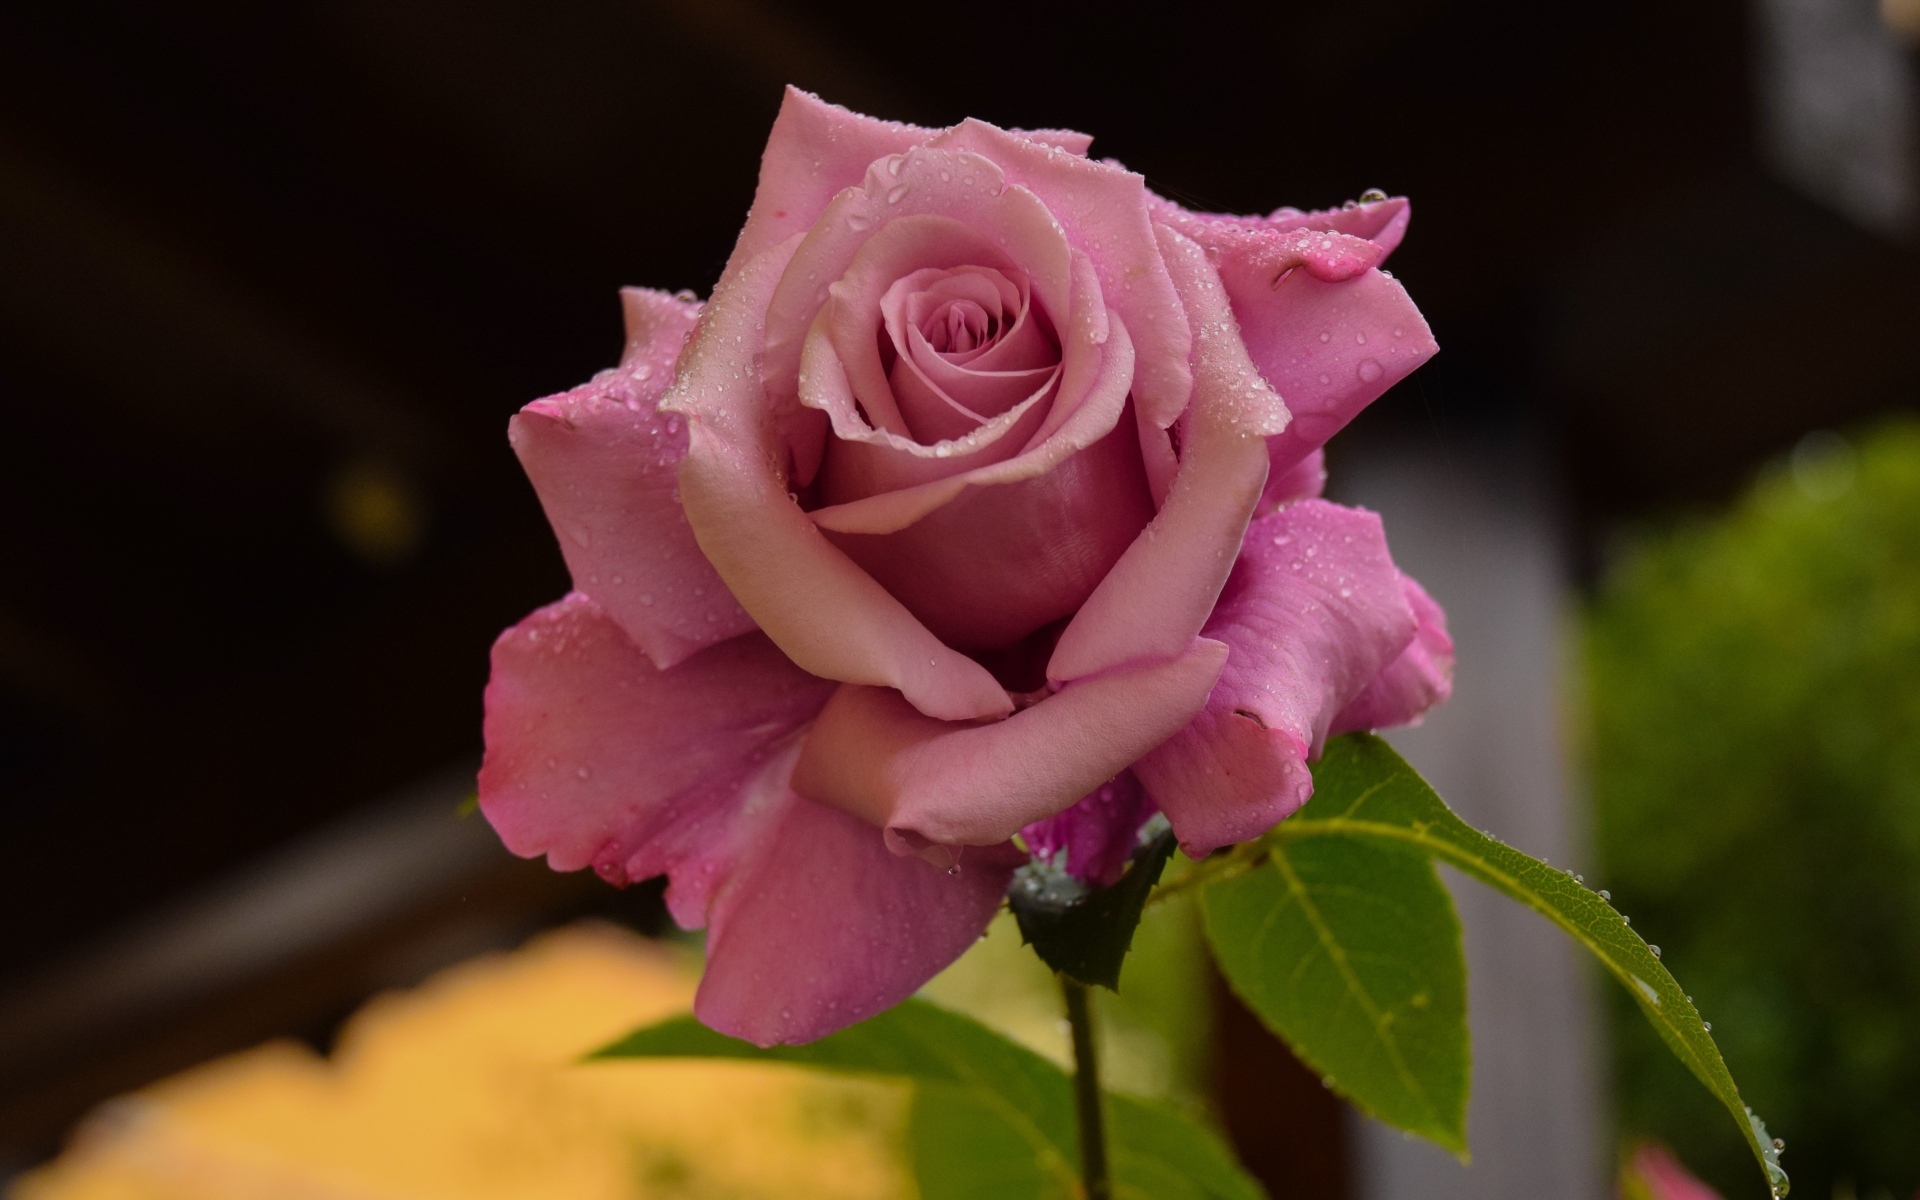 Dew on pink rose petals